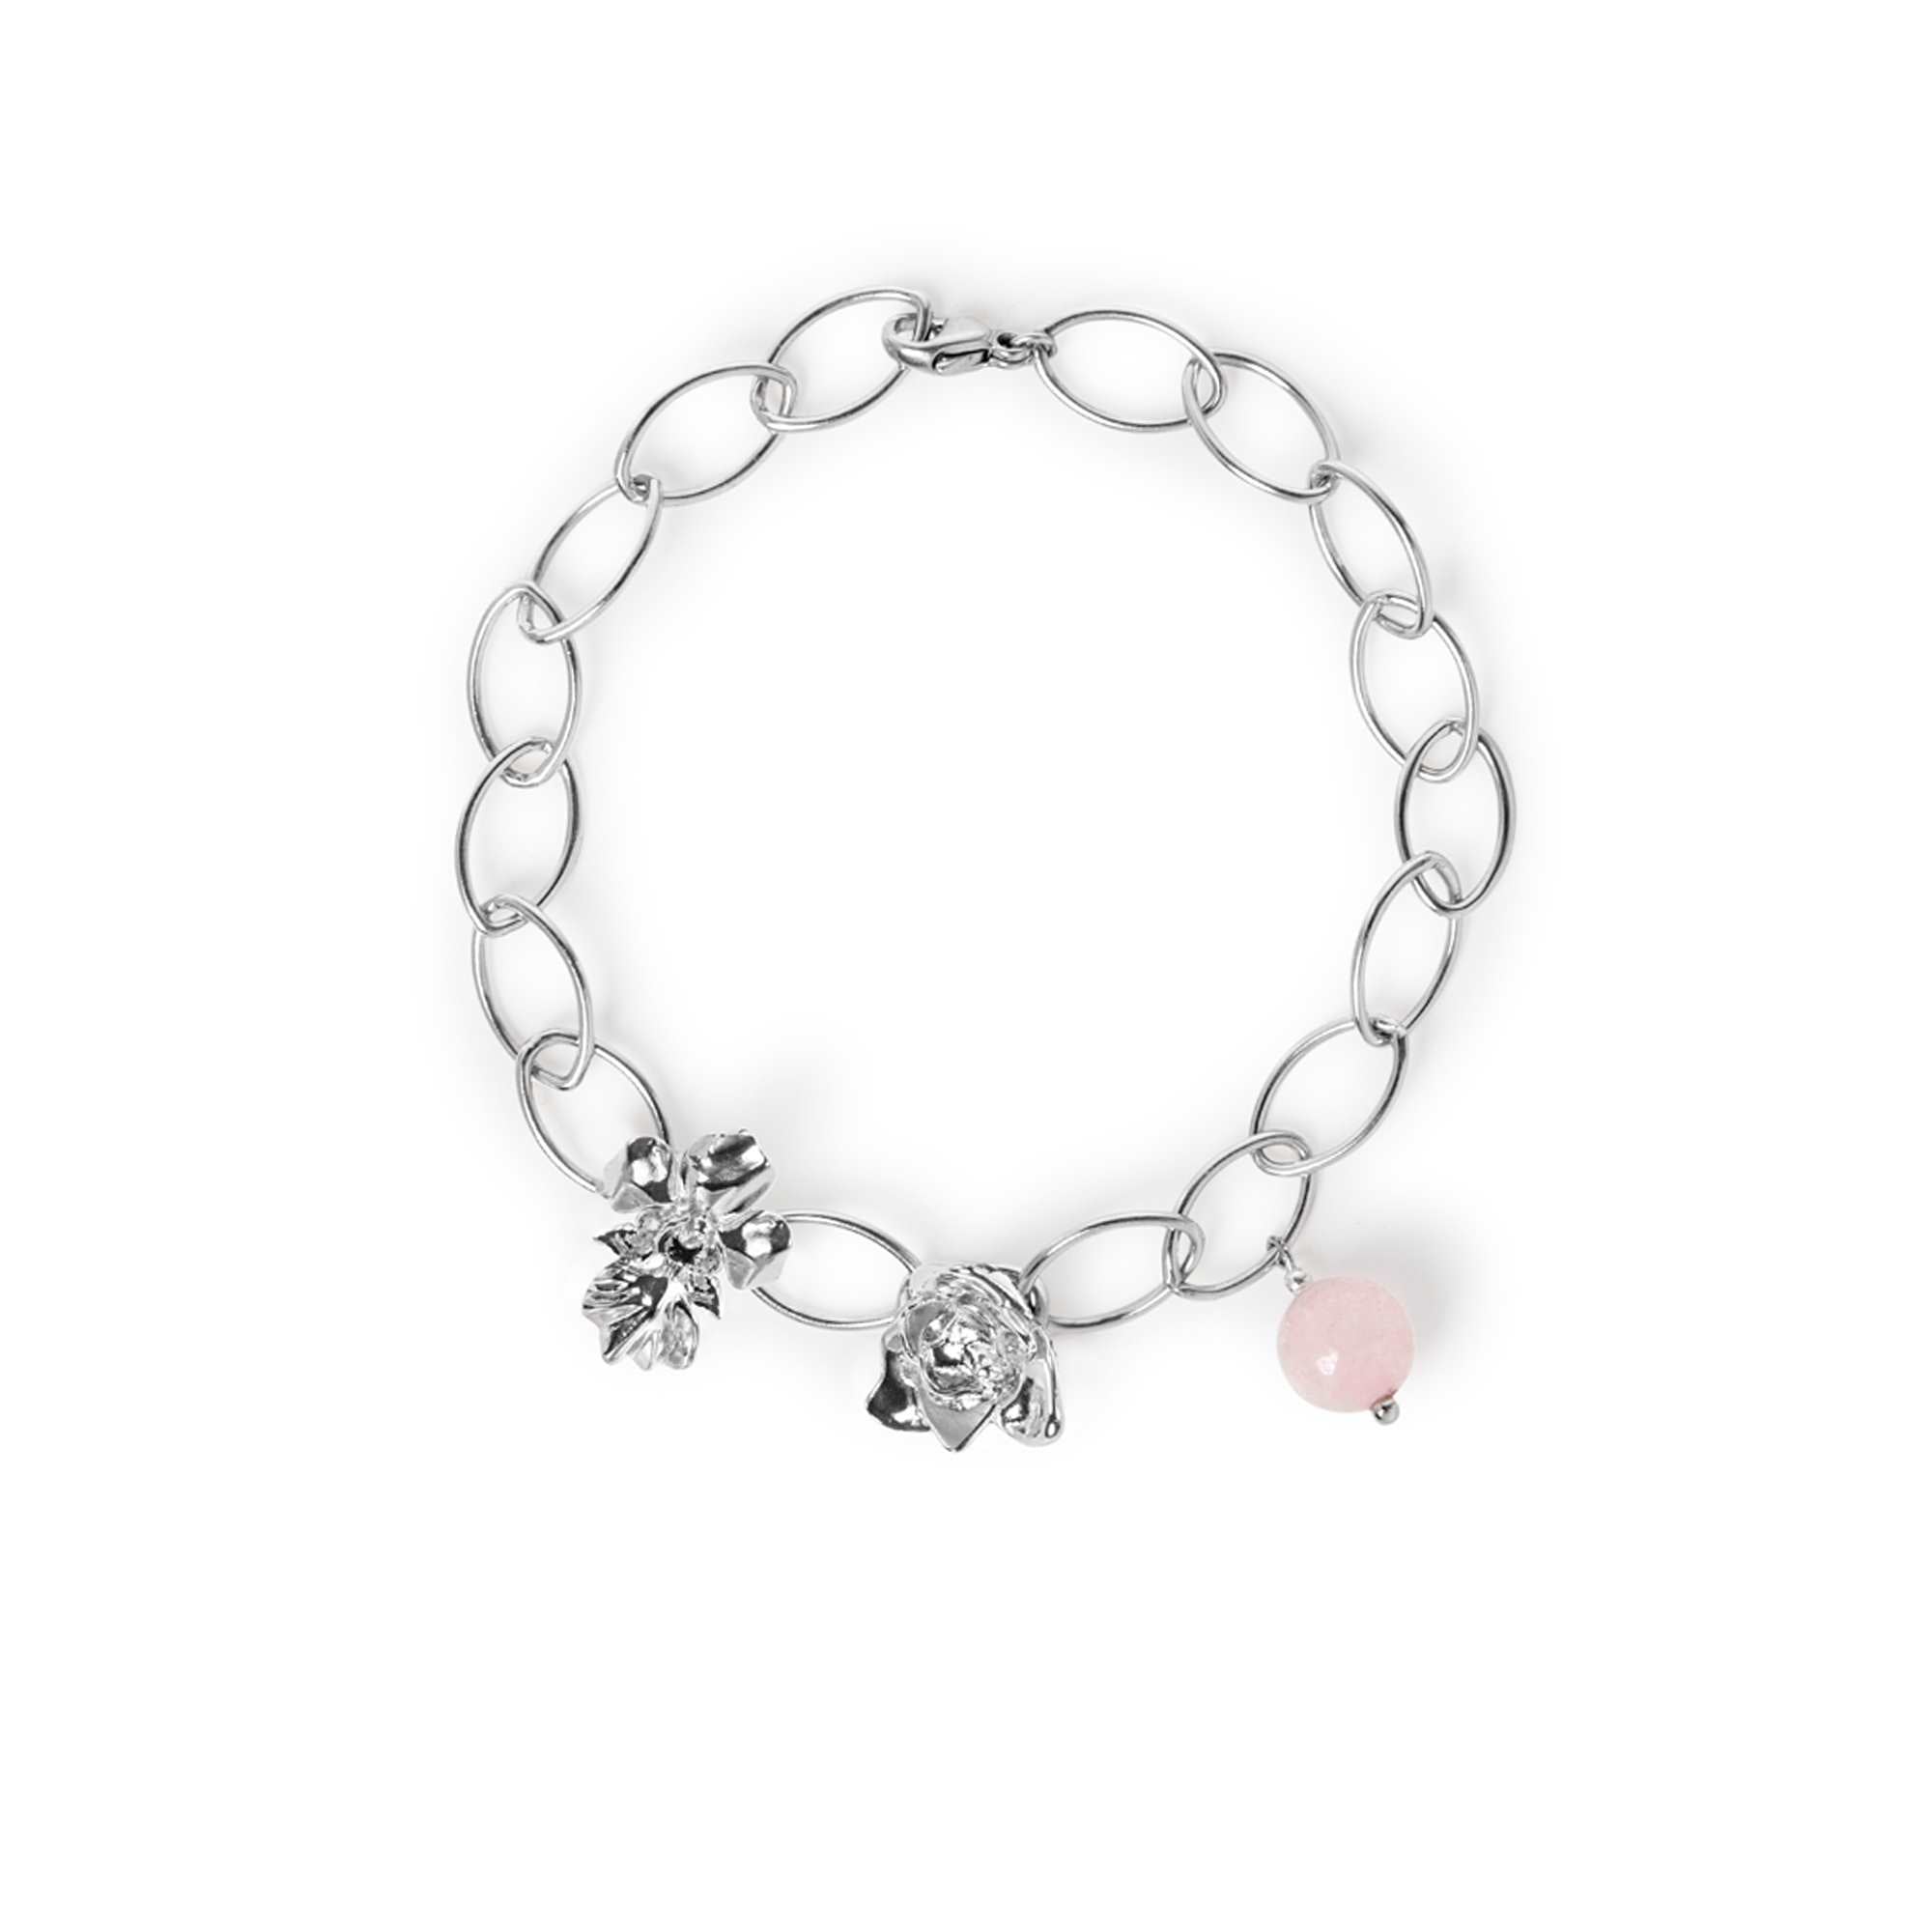 Budding Love Bracelet with Rose Quartz